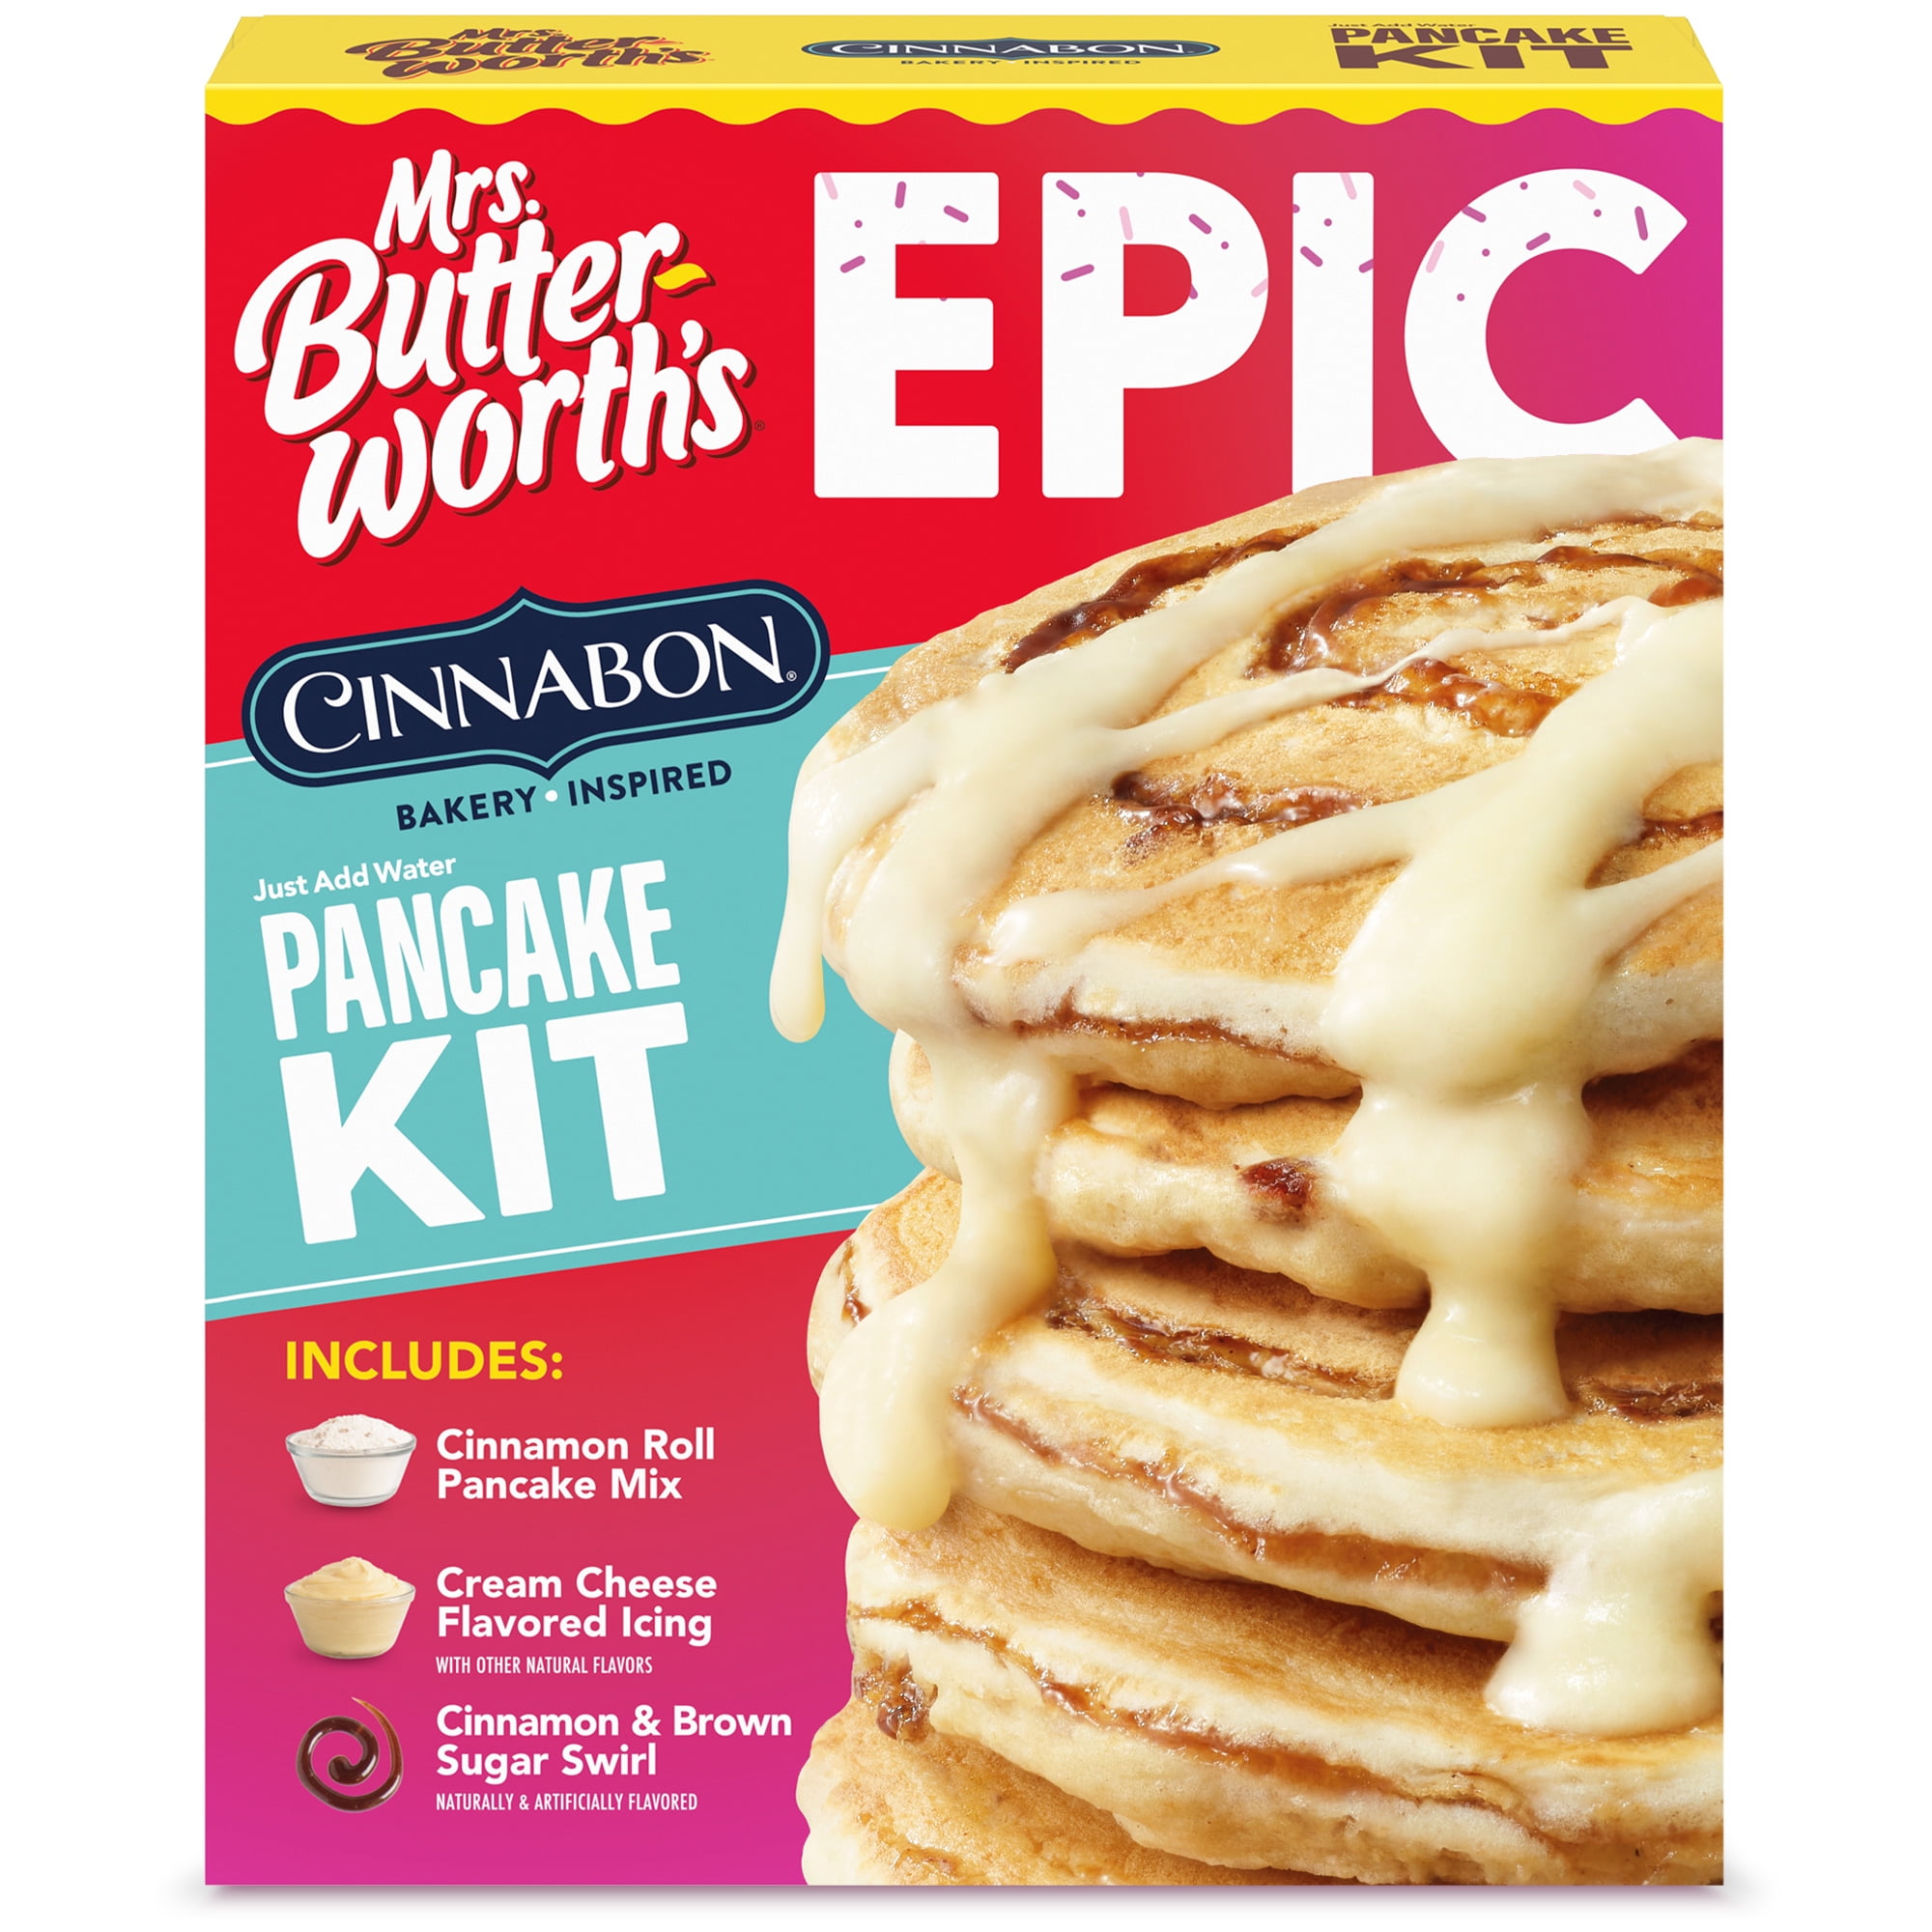 Mrs. Butterworth's Epic Cinnabon Bakery Inspired Pancake Kit, 25 oz